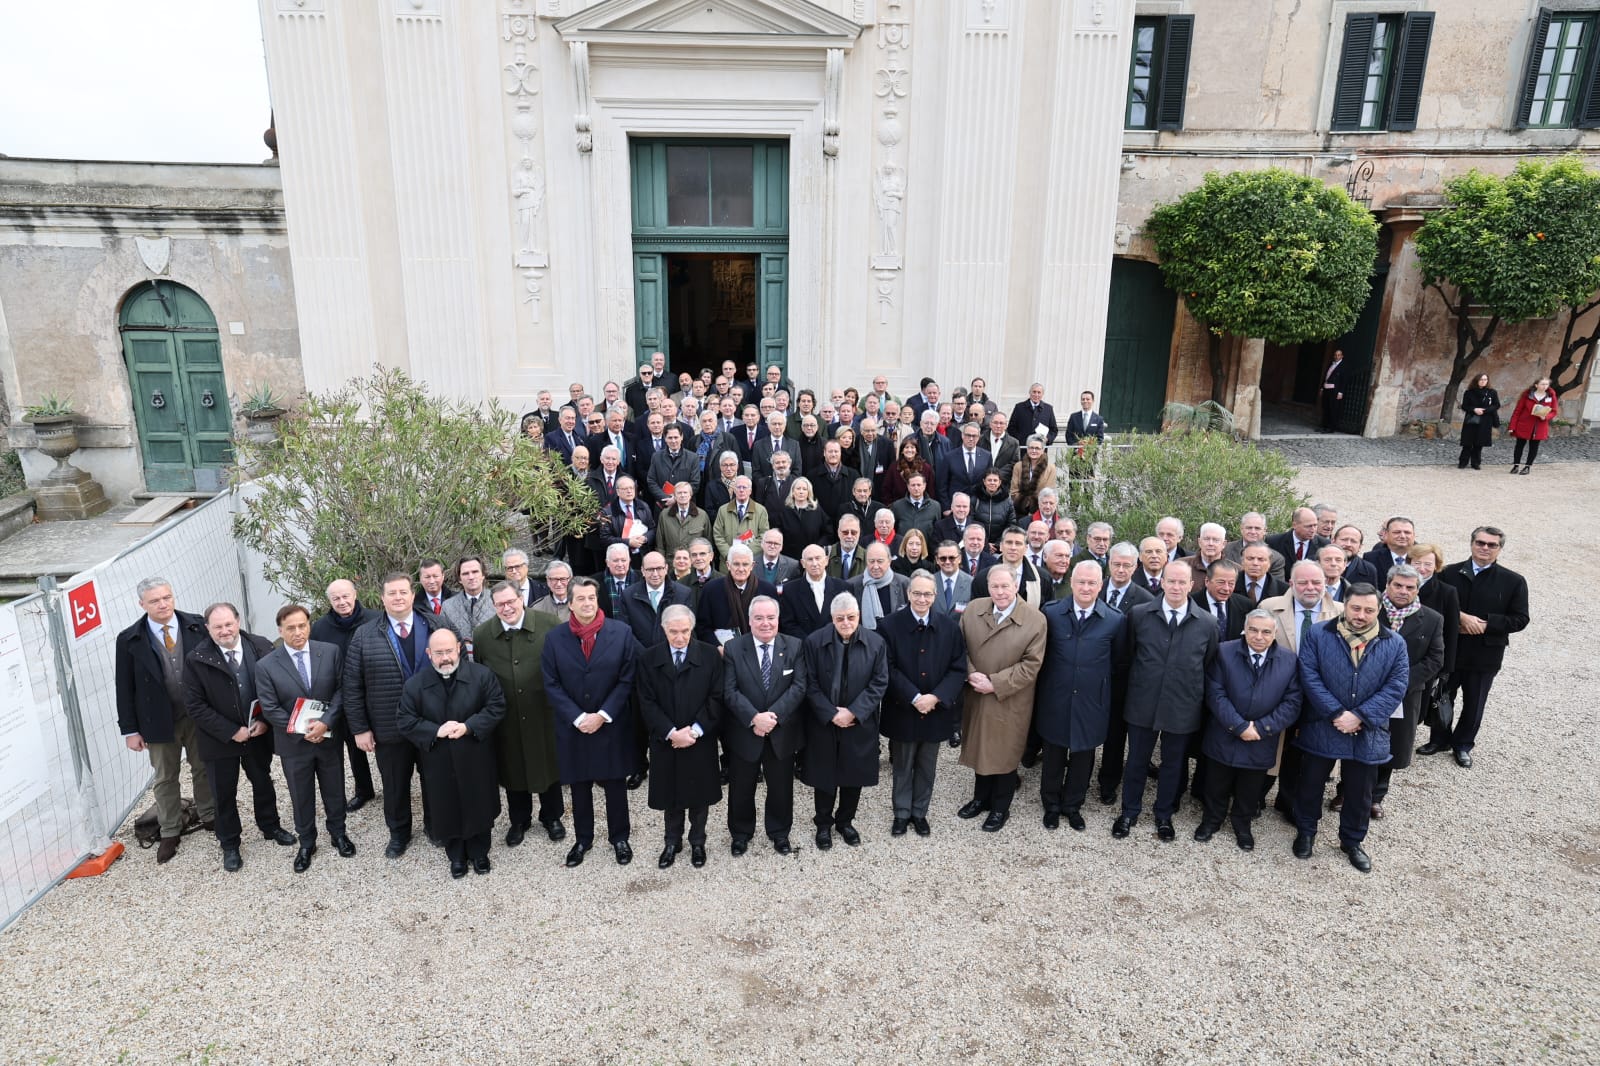 Intelligenza artificiale e diplomazia umanitaria al centro dei lavori della seconda giornata della Conferenza degli Ambasciatori del Sovrano Militare Ordine di Malta